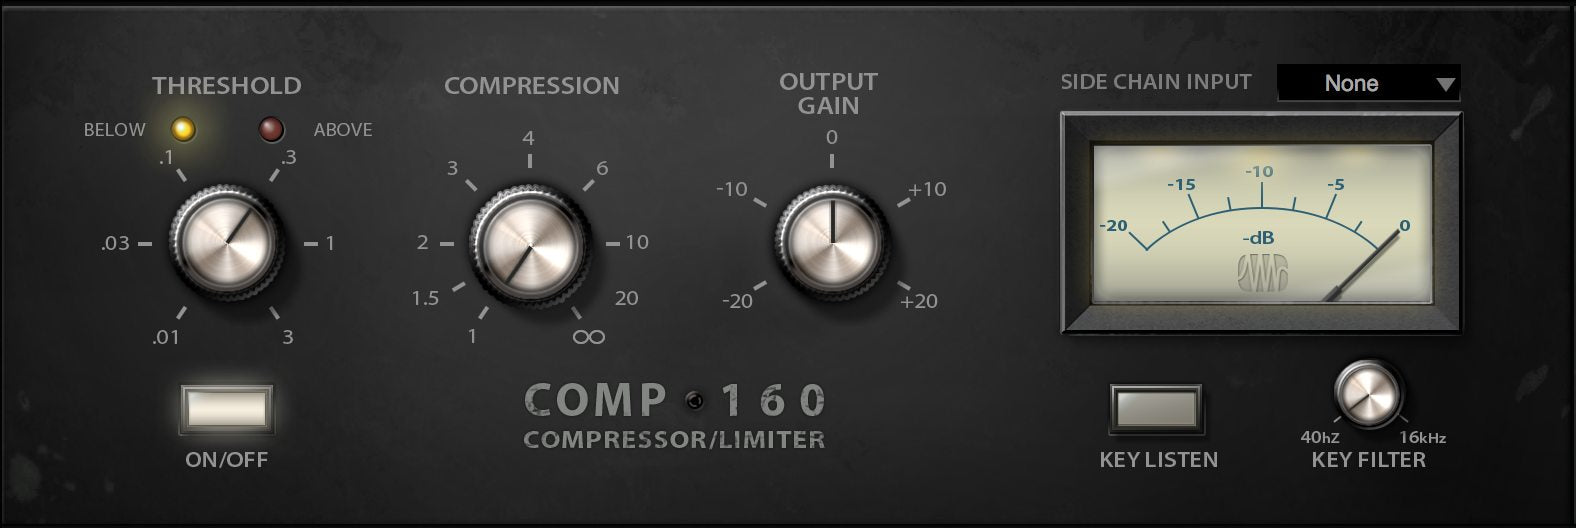 PreSonus Comp 160 Compressor